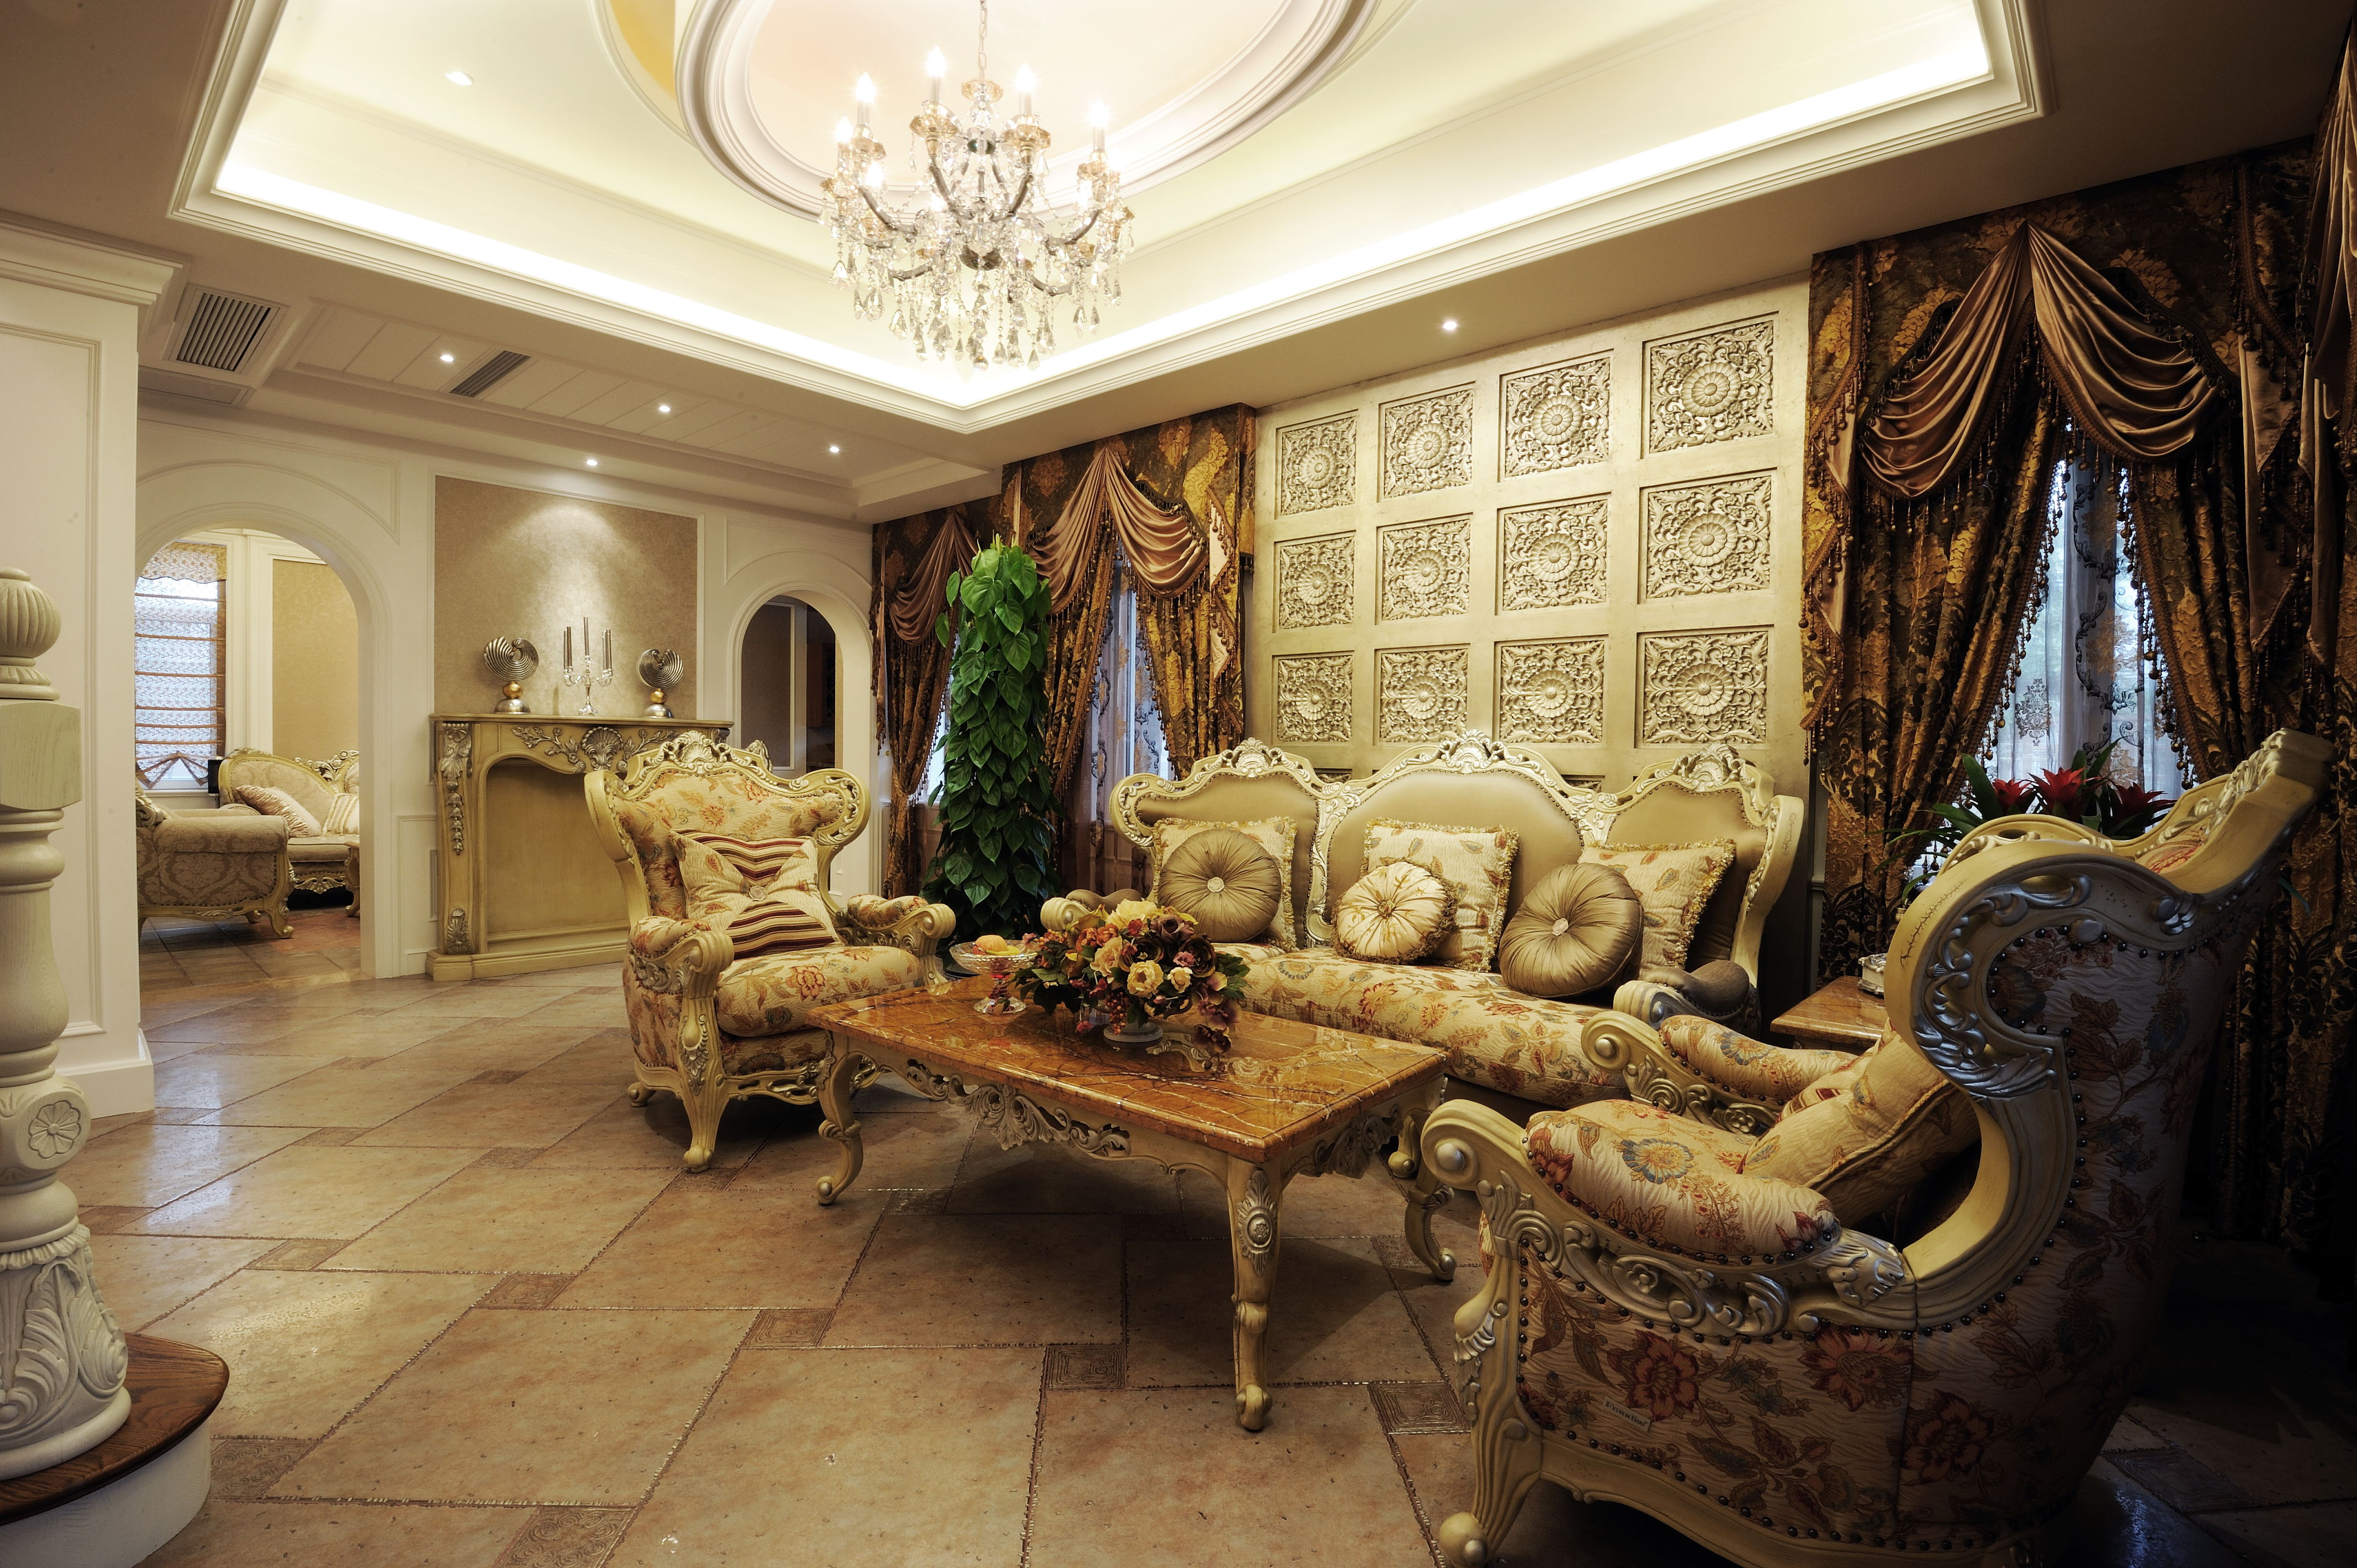 欧式 别墅 客厅 卧室 厨房 餐厅图片来自大金家用中央空调在法风浪漫